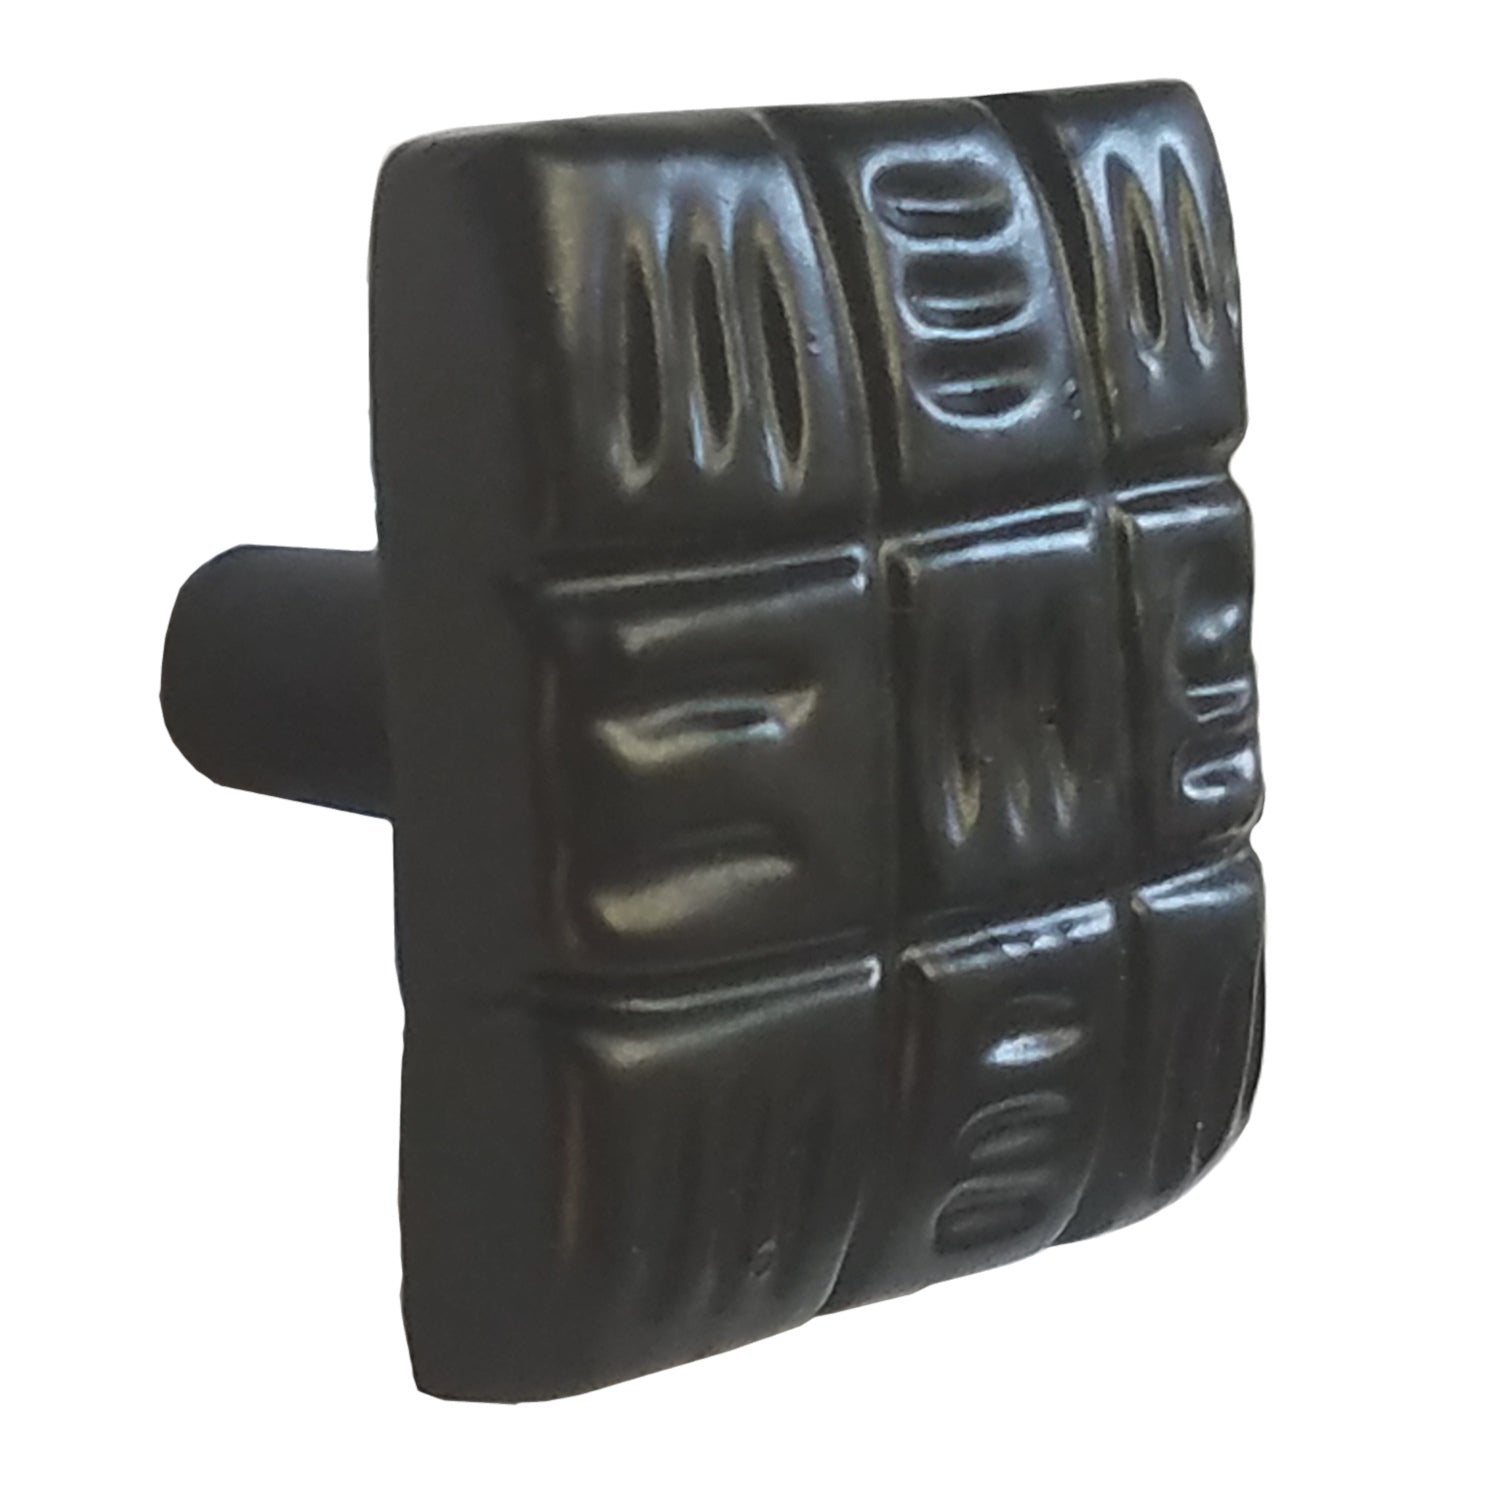 Warwick DH1116WIB - Pomo cuadrado para gabinete (hierro forjado rústico, color negro, 1 1/4 pulgadas)